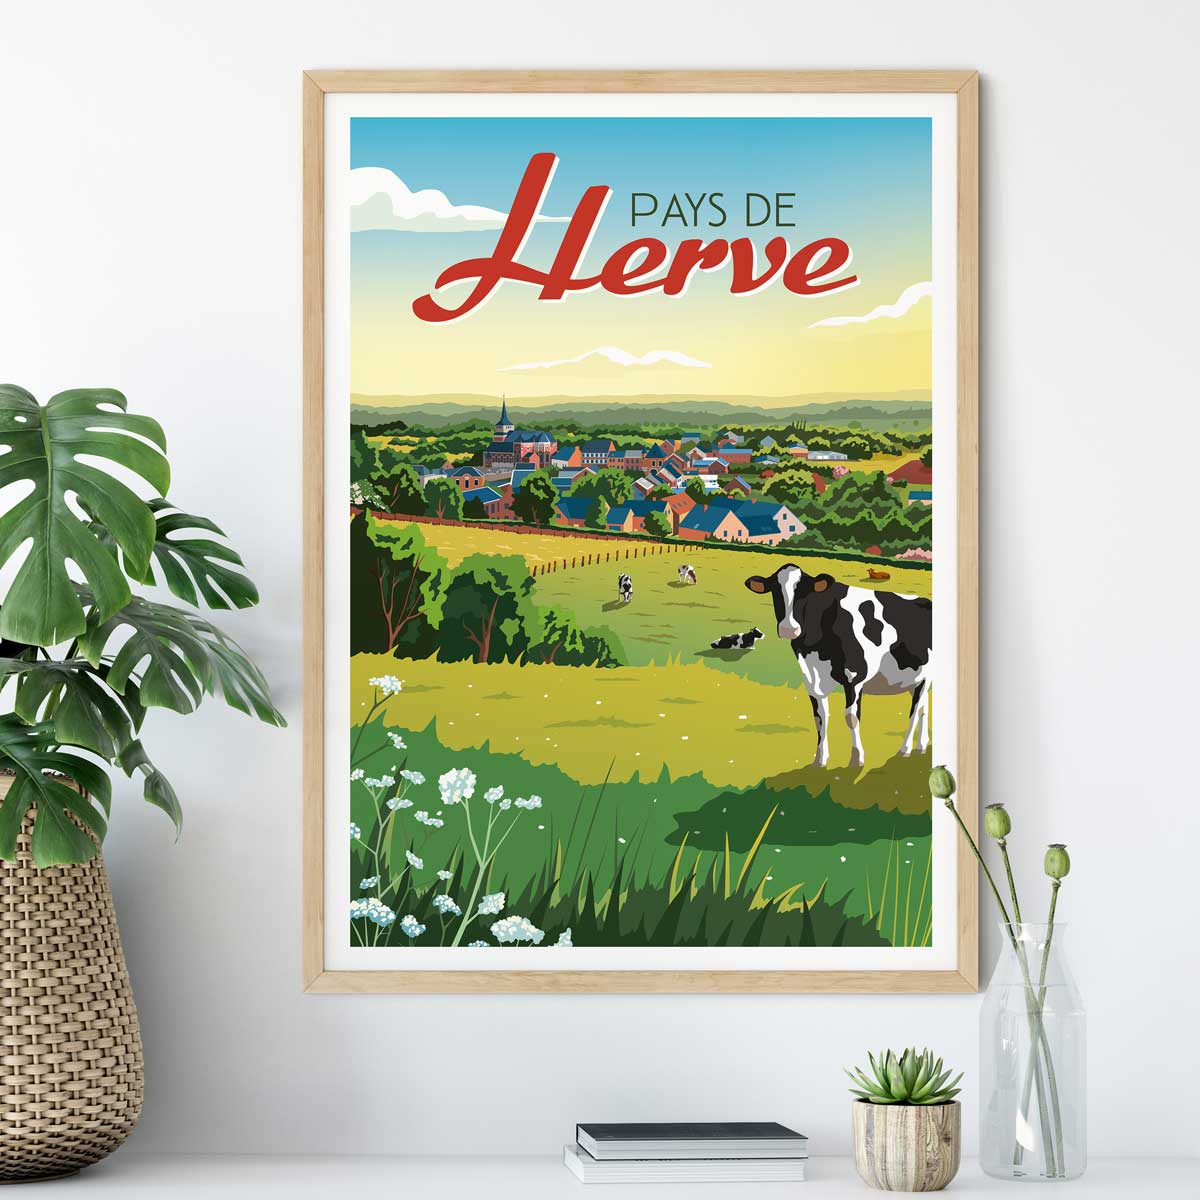 Pays de Herve poster